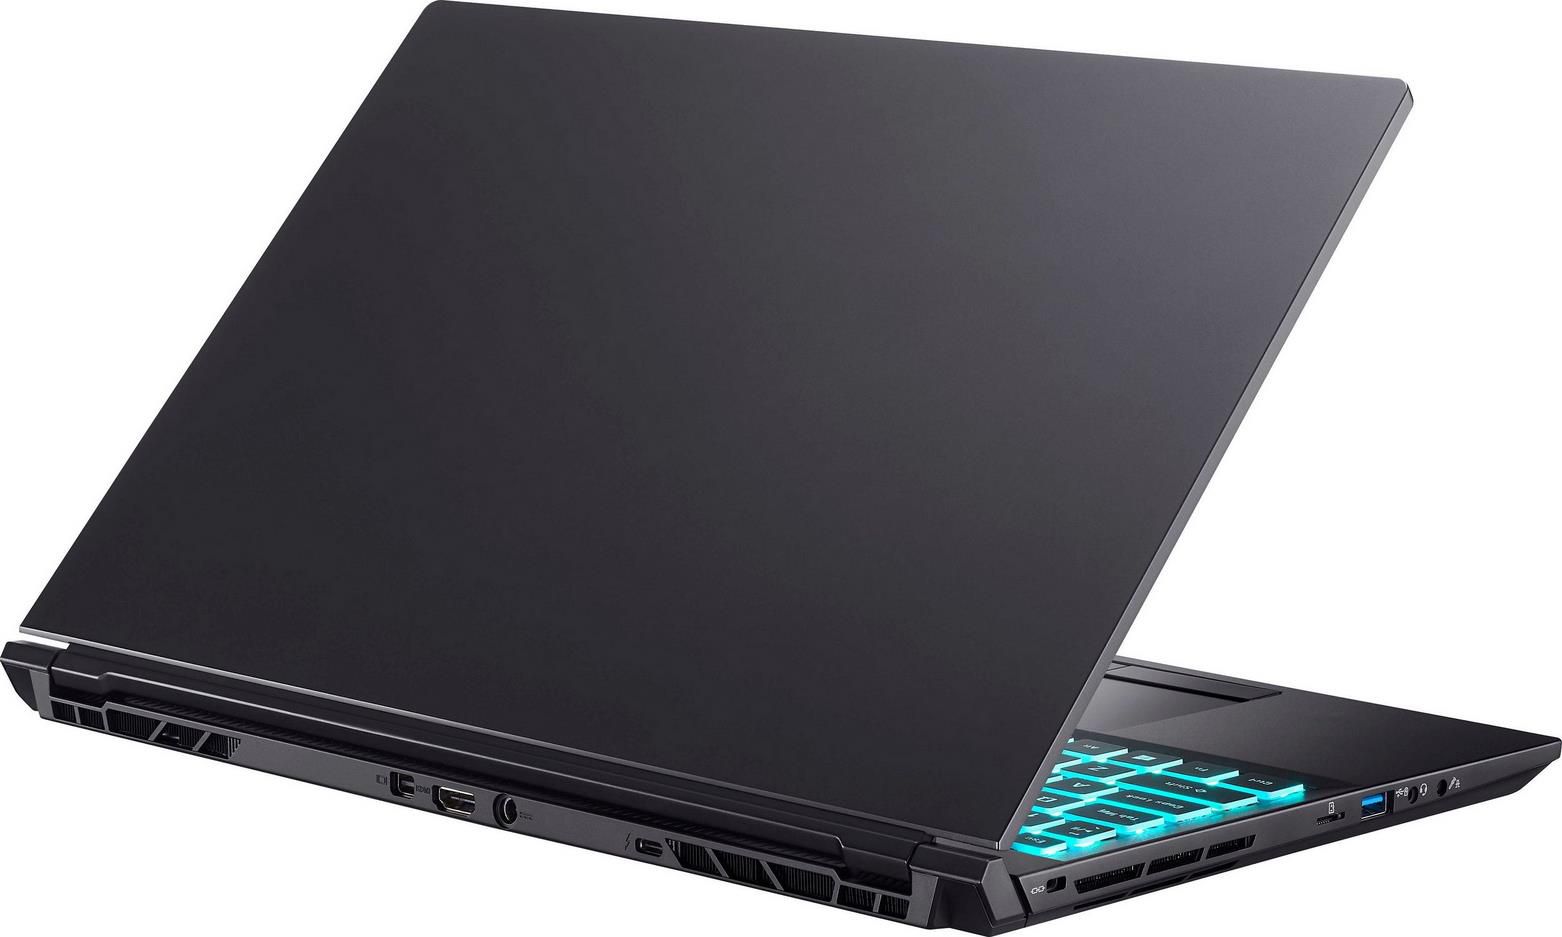 Hyrican Striker 1636   15,6 Zoll FHD Gaming Notebook mit i7 10750H + RTX 3070 MaxQ für 1.294,99€ (statt 1.799€)